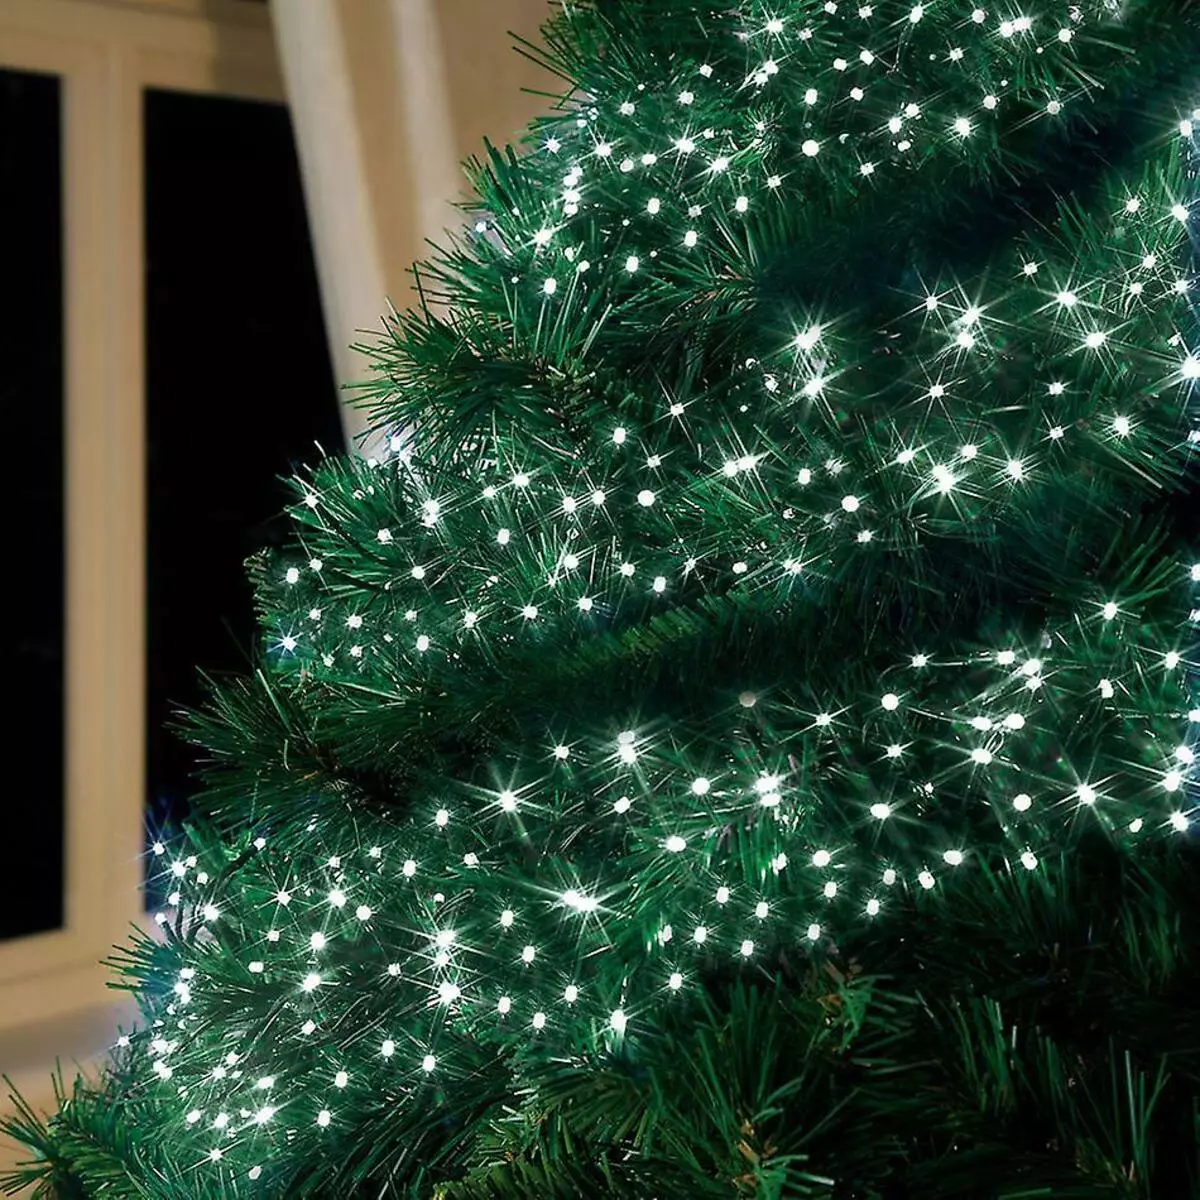 Ako zdobí vianočný strom s vencom? Ako správne a krásne obliekať to podľa schémy s žiariace elektrickej girlandami a ďalšie veniec? 7630_5